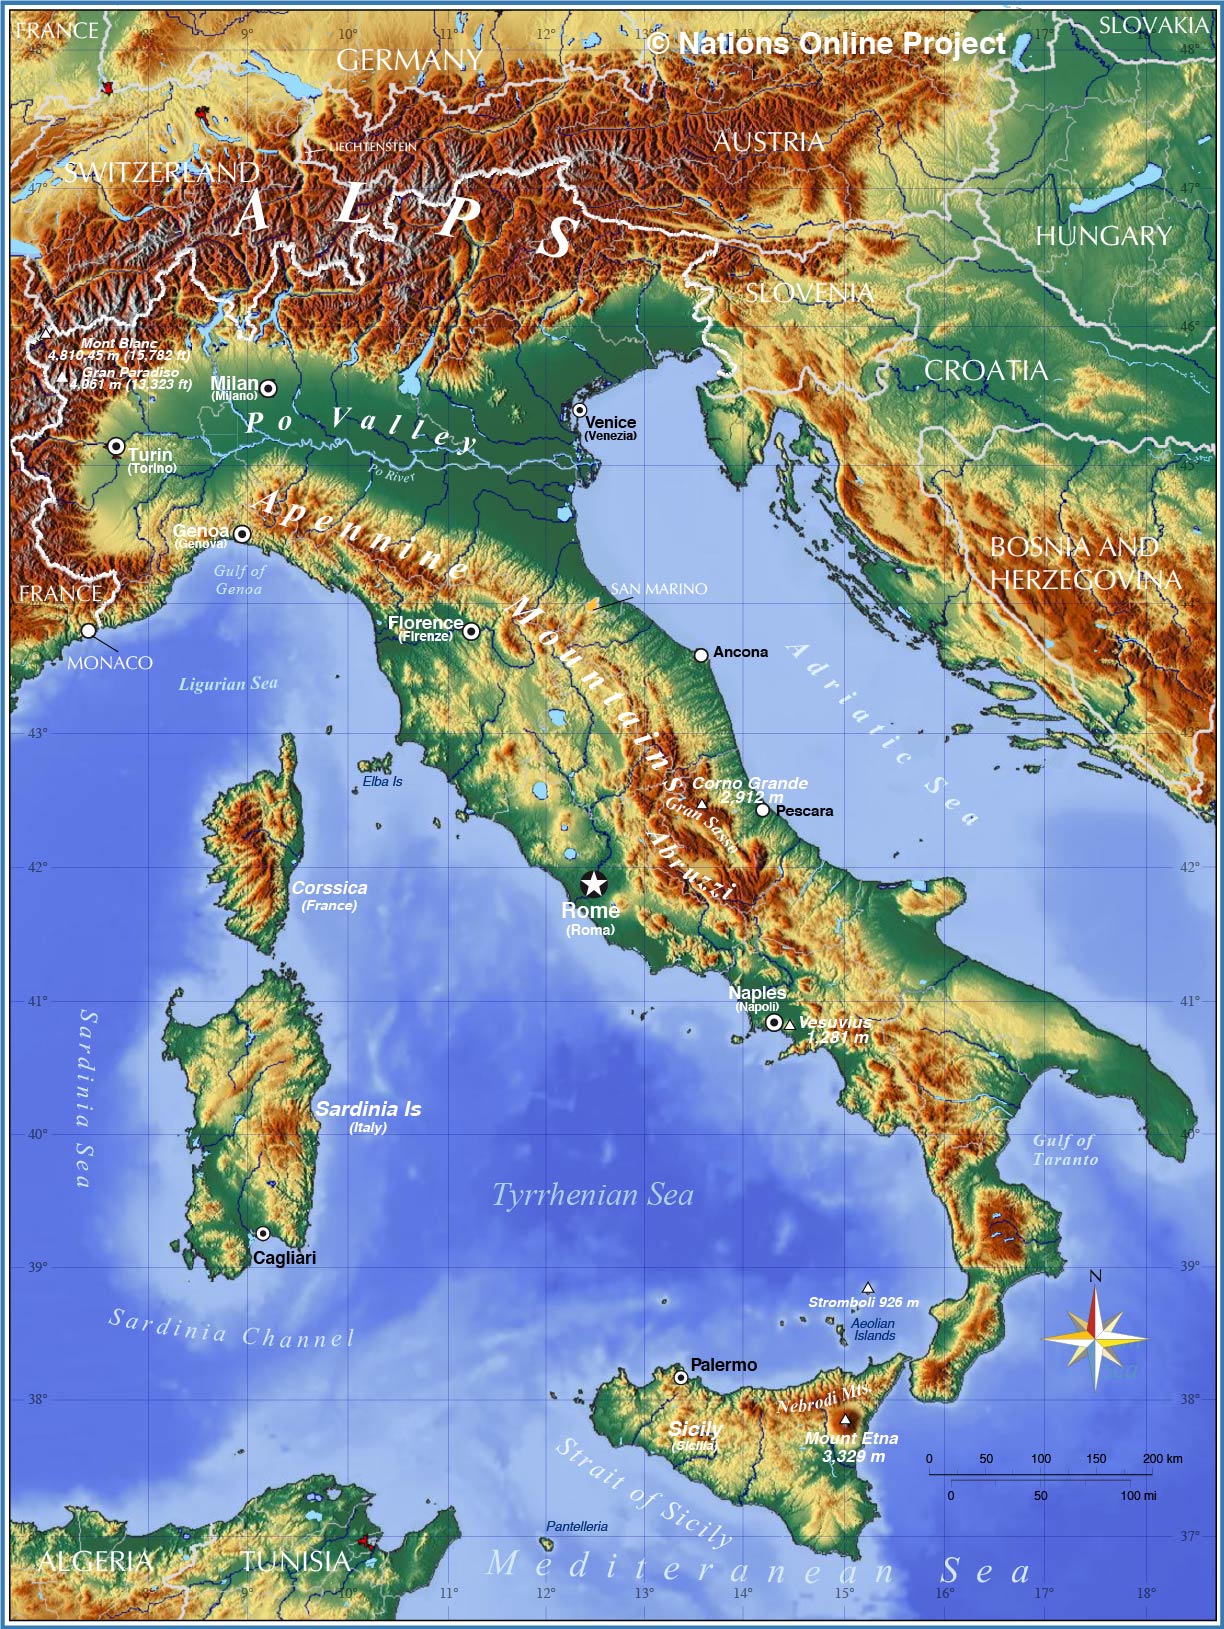 Italian Map In Italian